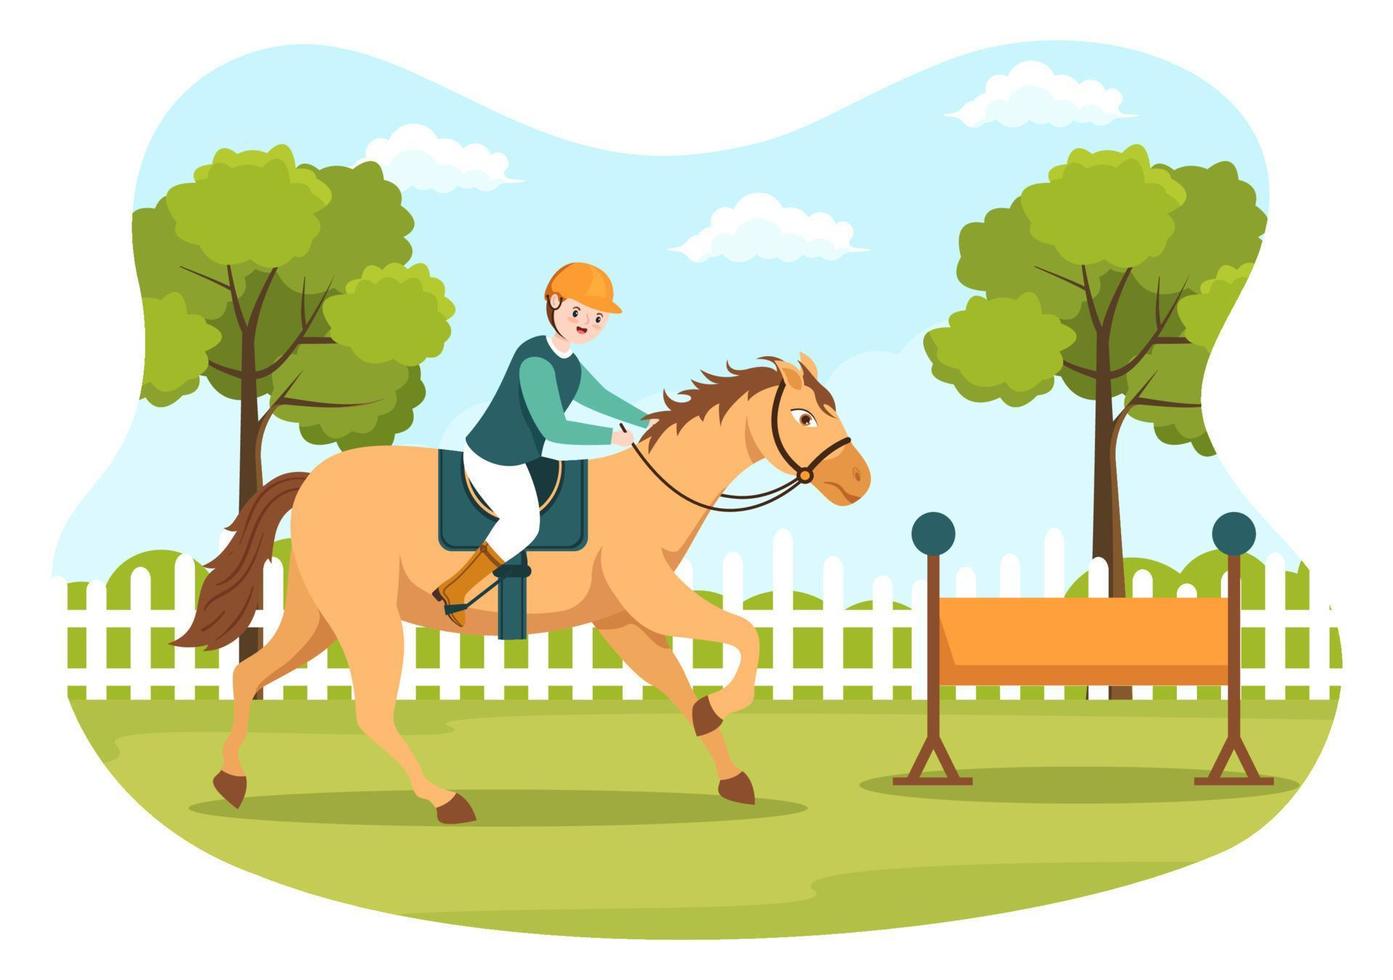 ridning tecknad illustration med söta människor karaktär som utövar ridning eller ridsport i det gröna fältet vektor